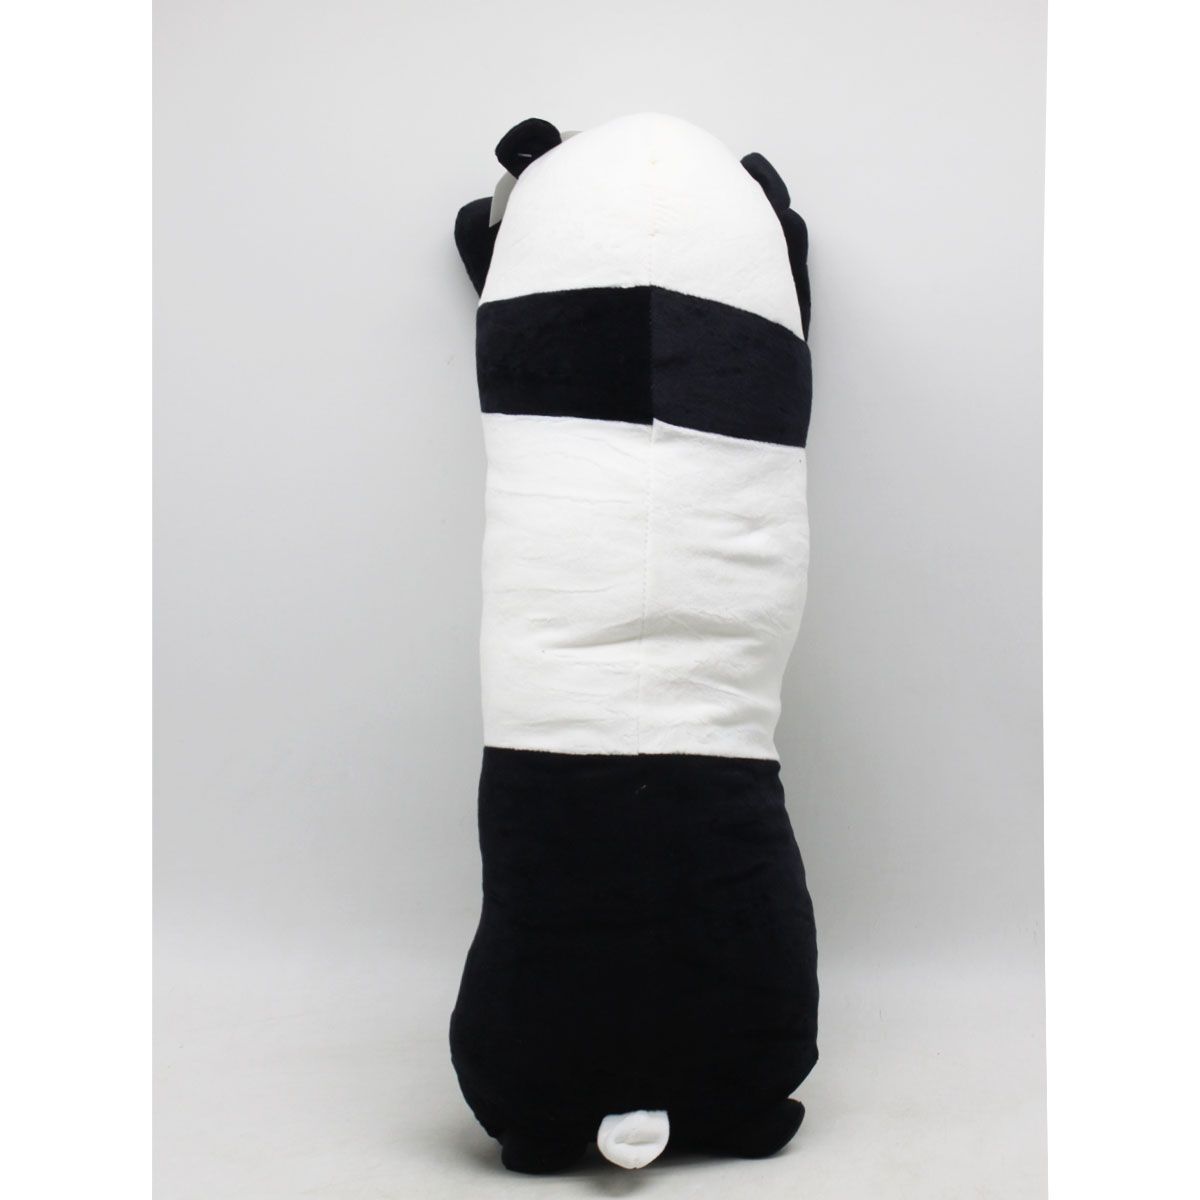 Мягкая игрушка-обнимашка "Панда", 65 см